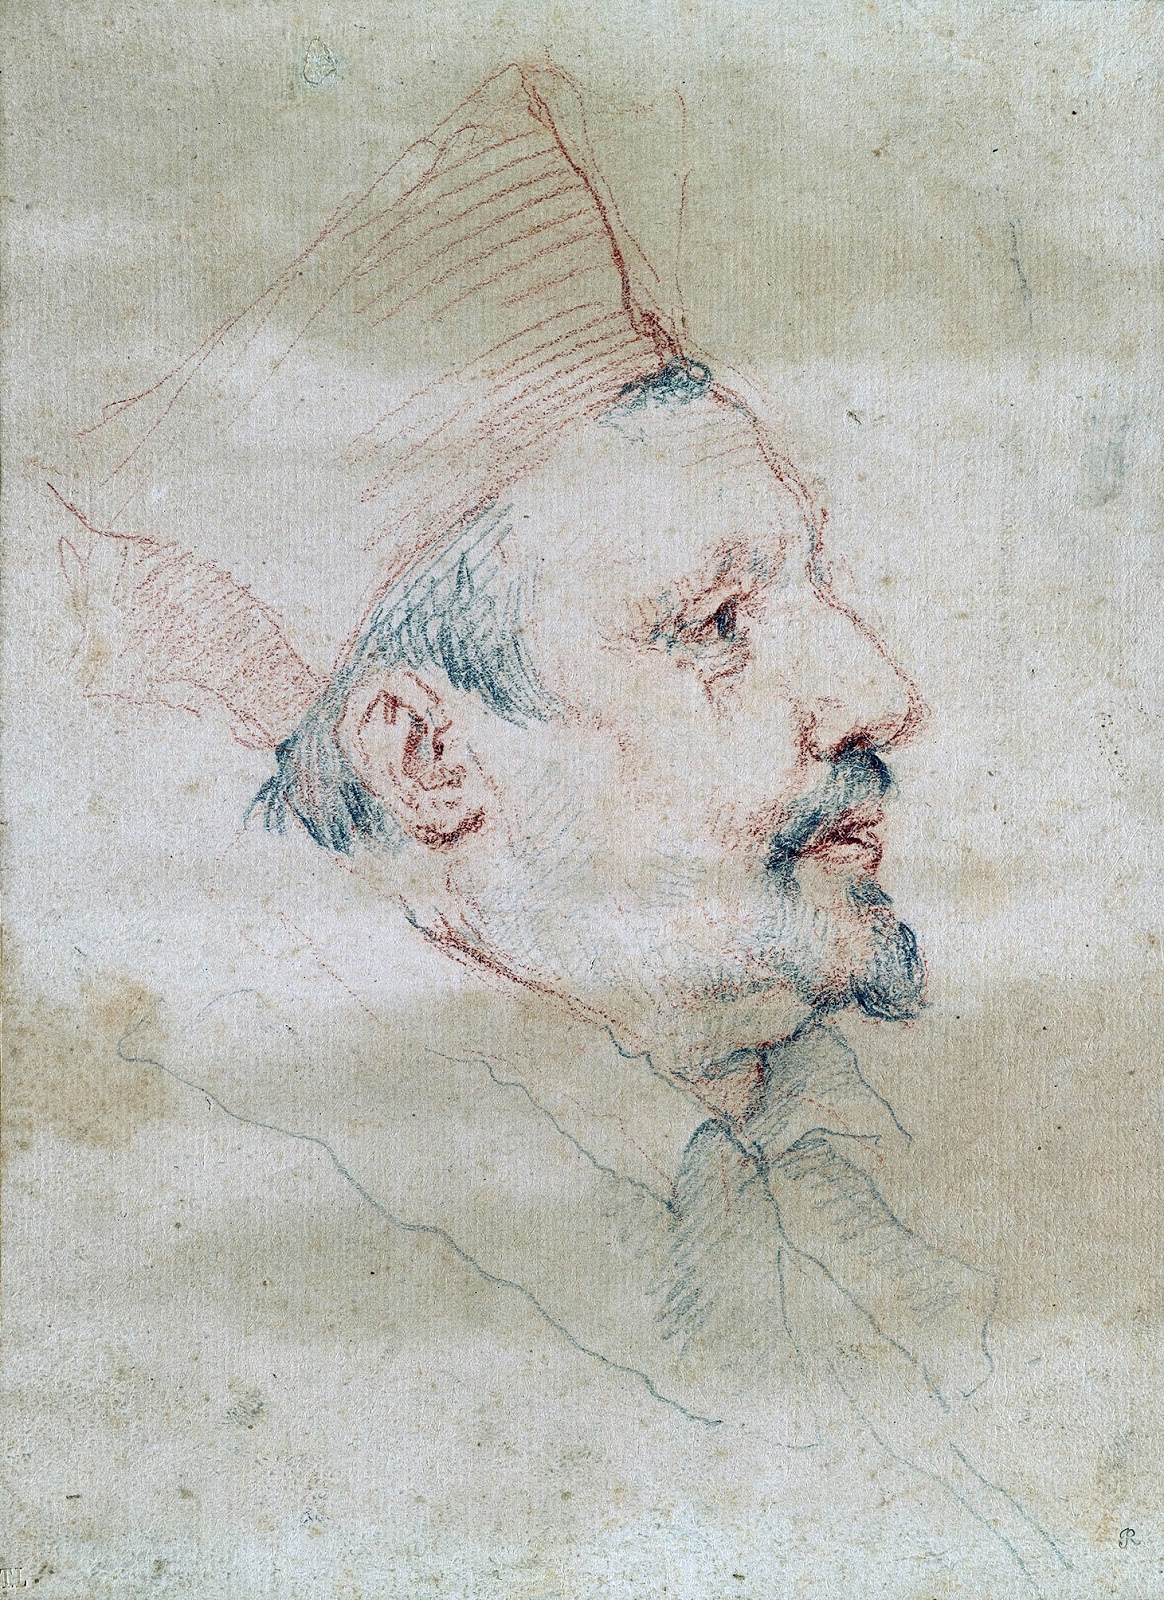 Gian+Lorenzo+Bernini-1598-1680 (80).jpg